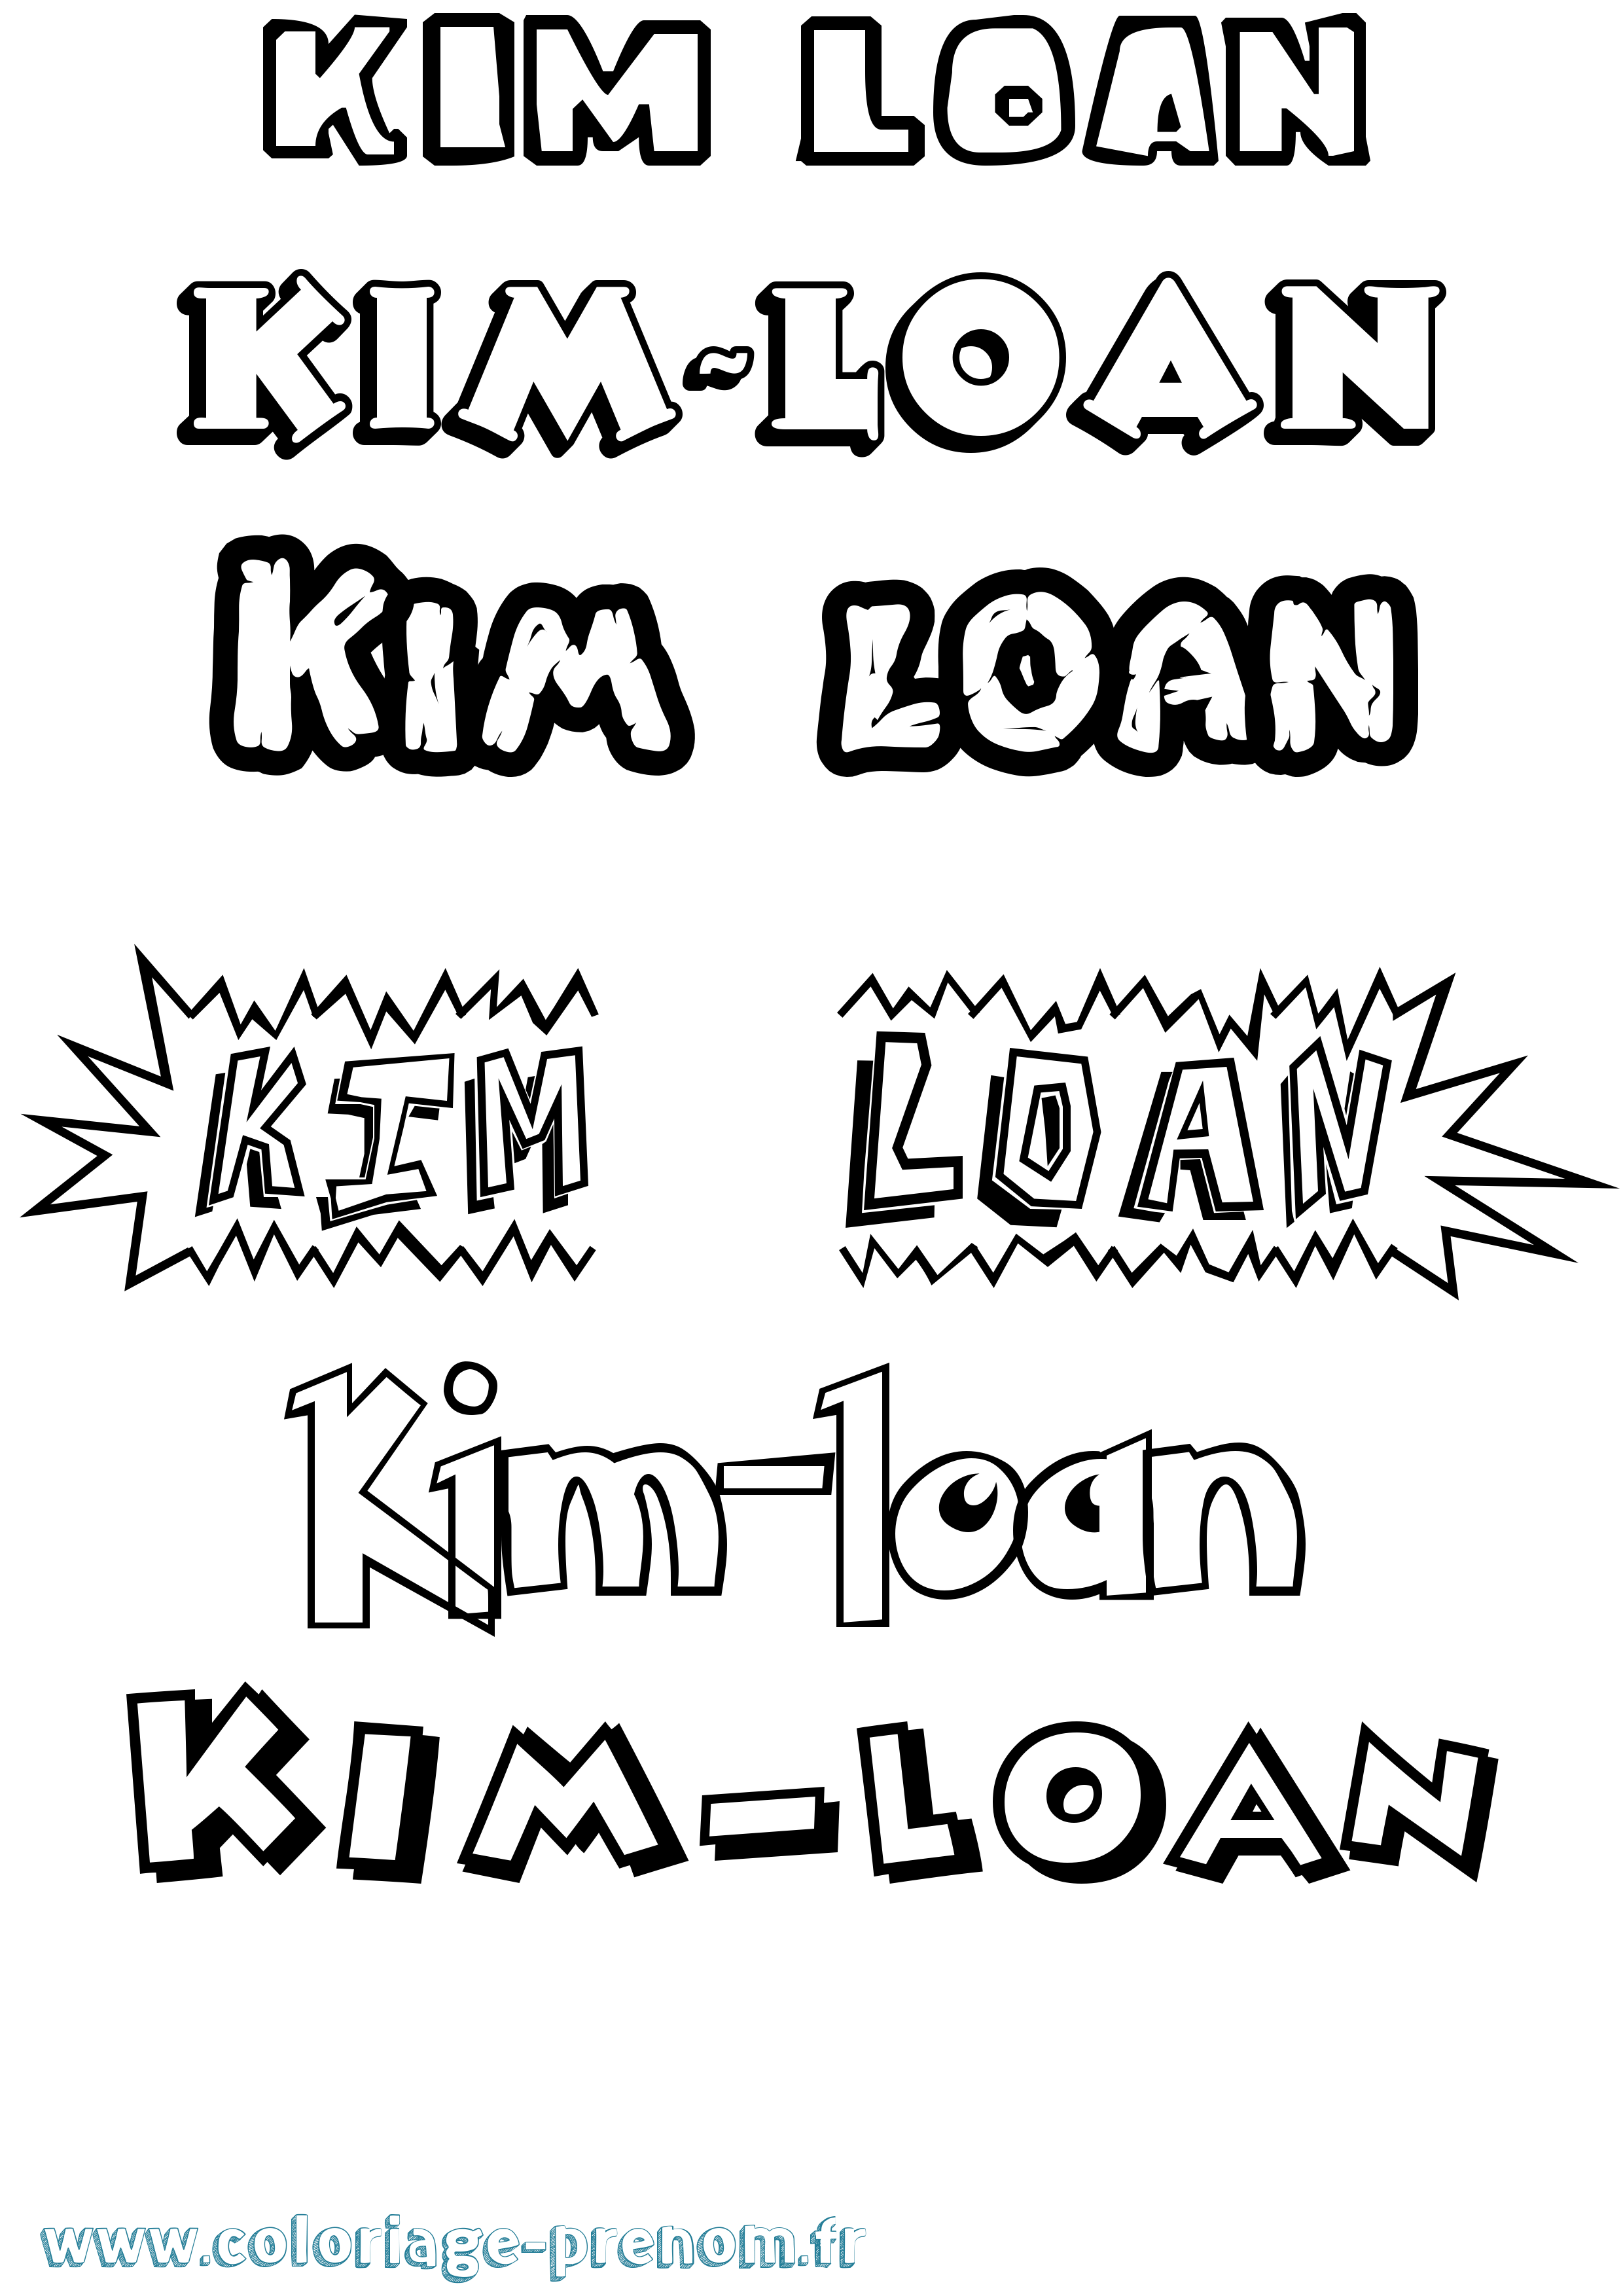 Coloriage prénom Kim-Loan Dessin Animé